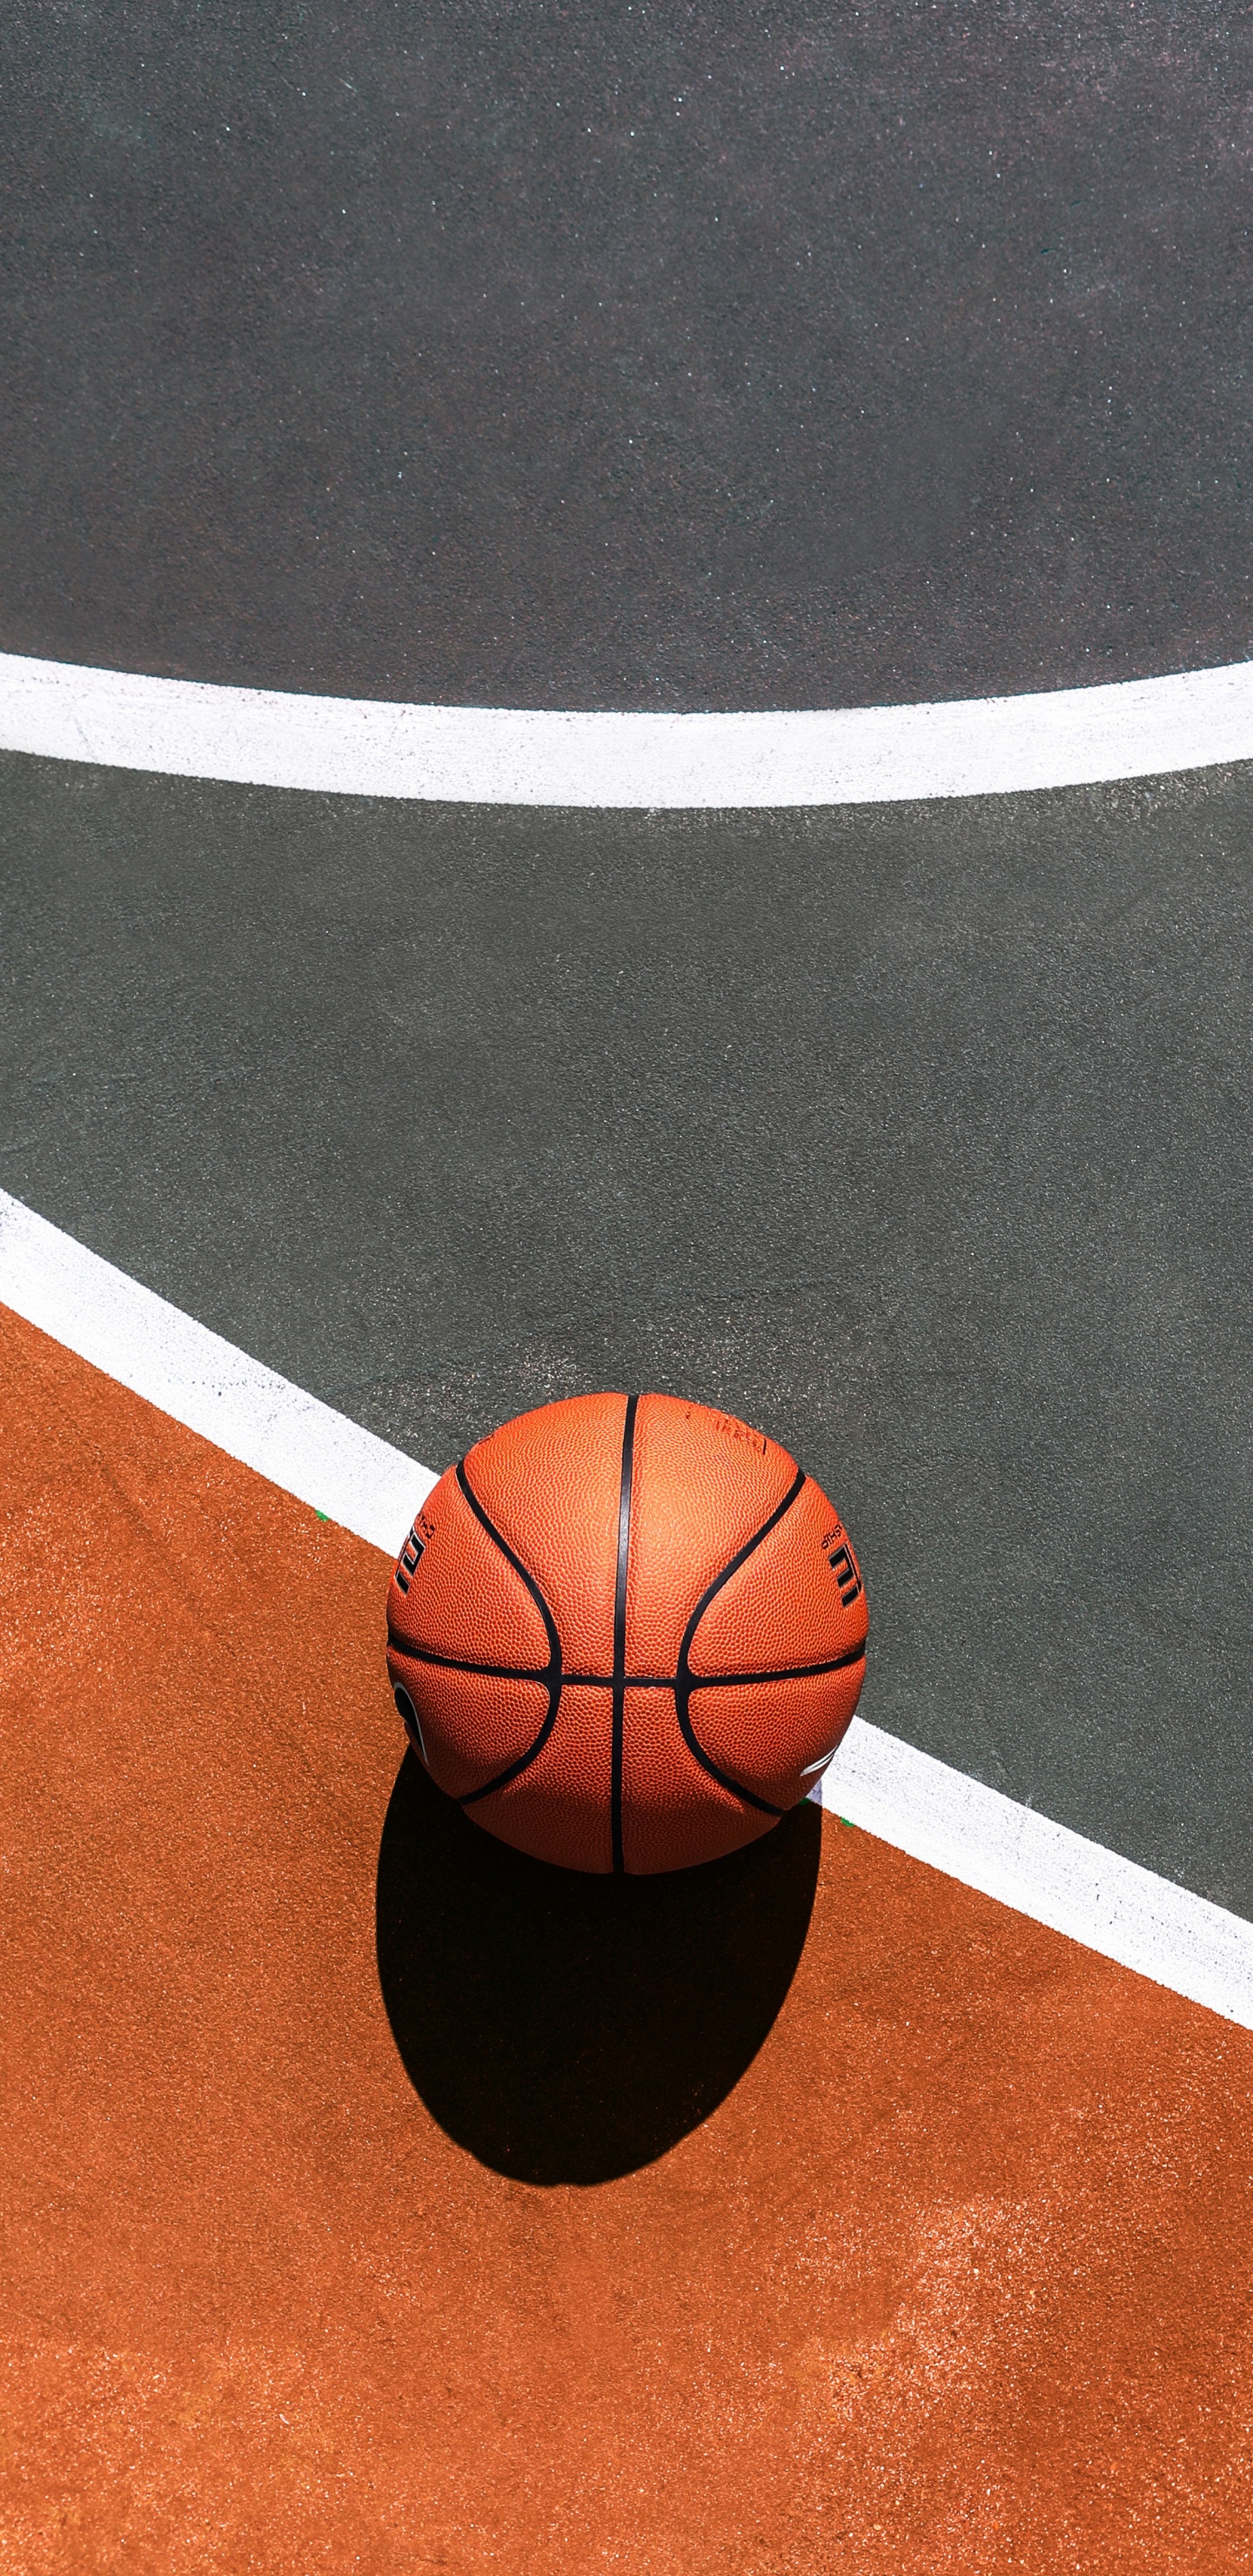 Basket-ball Sur un Terrain de Basket Bleu et Blanc. Wallpaper in 1440x2960 Resolution